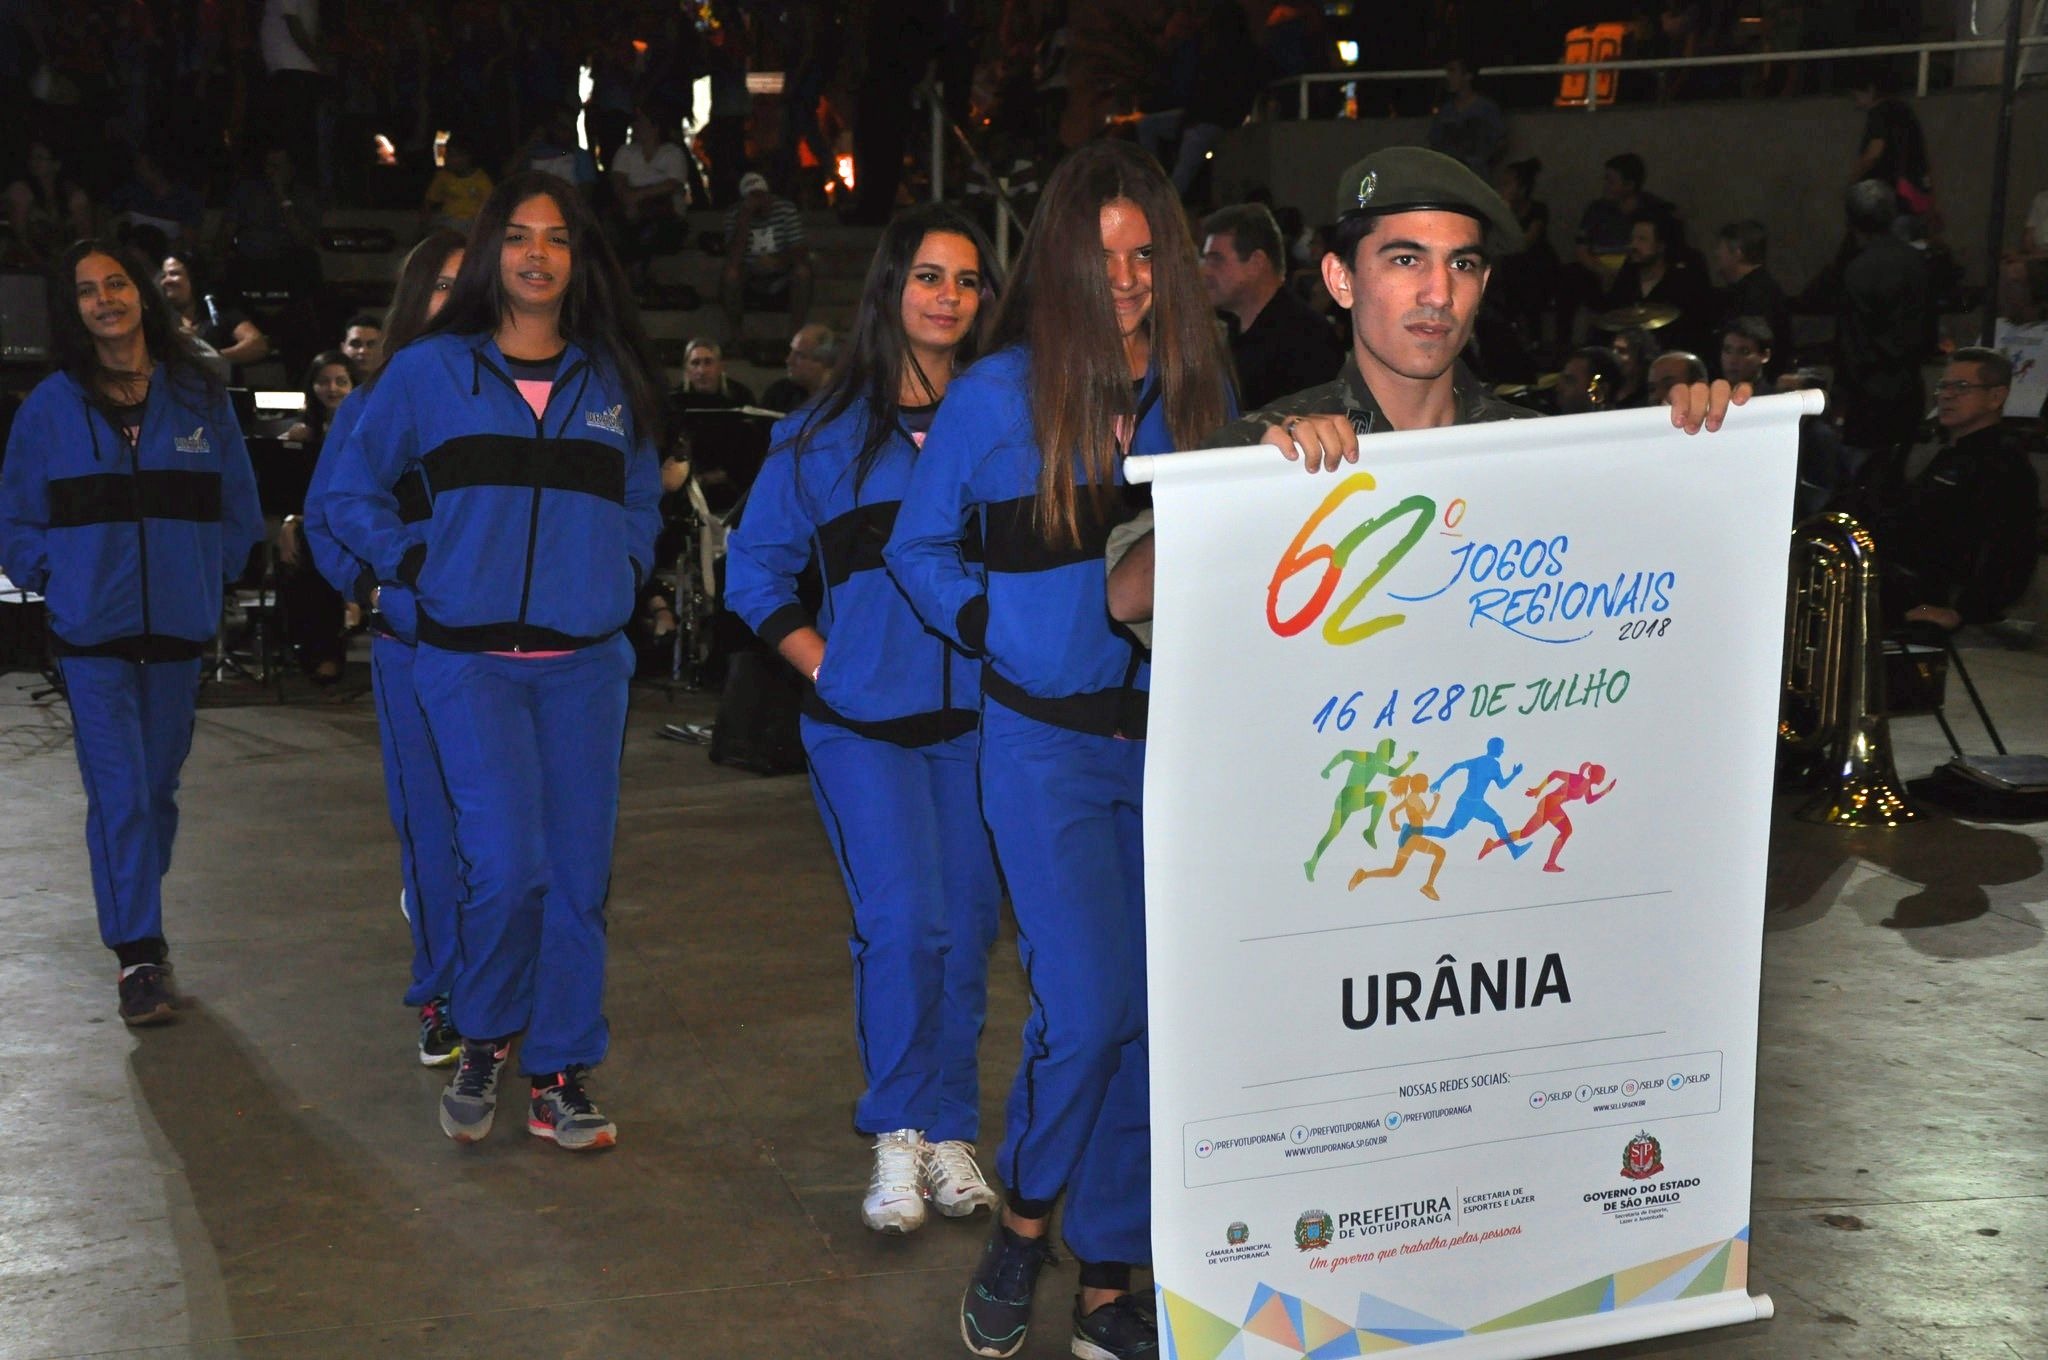  Urânia na abertura oficial dos Jogos Regionais 2018